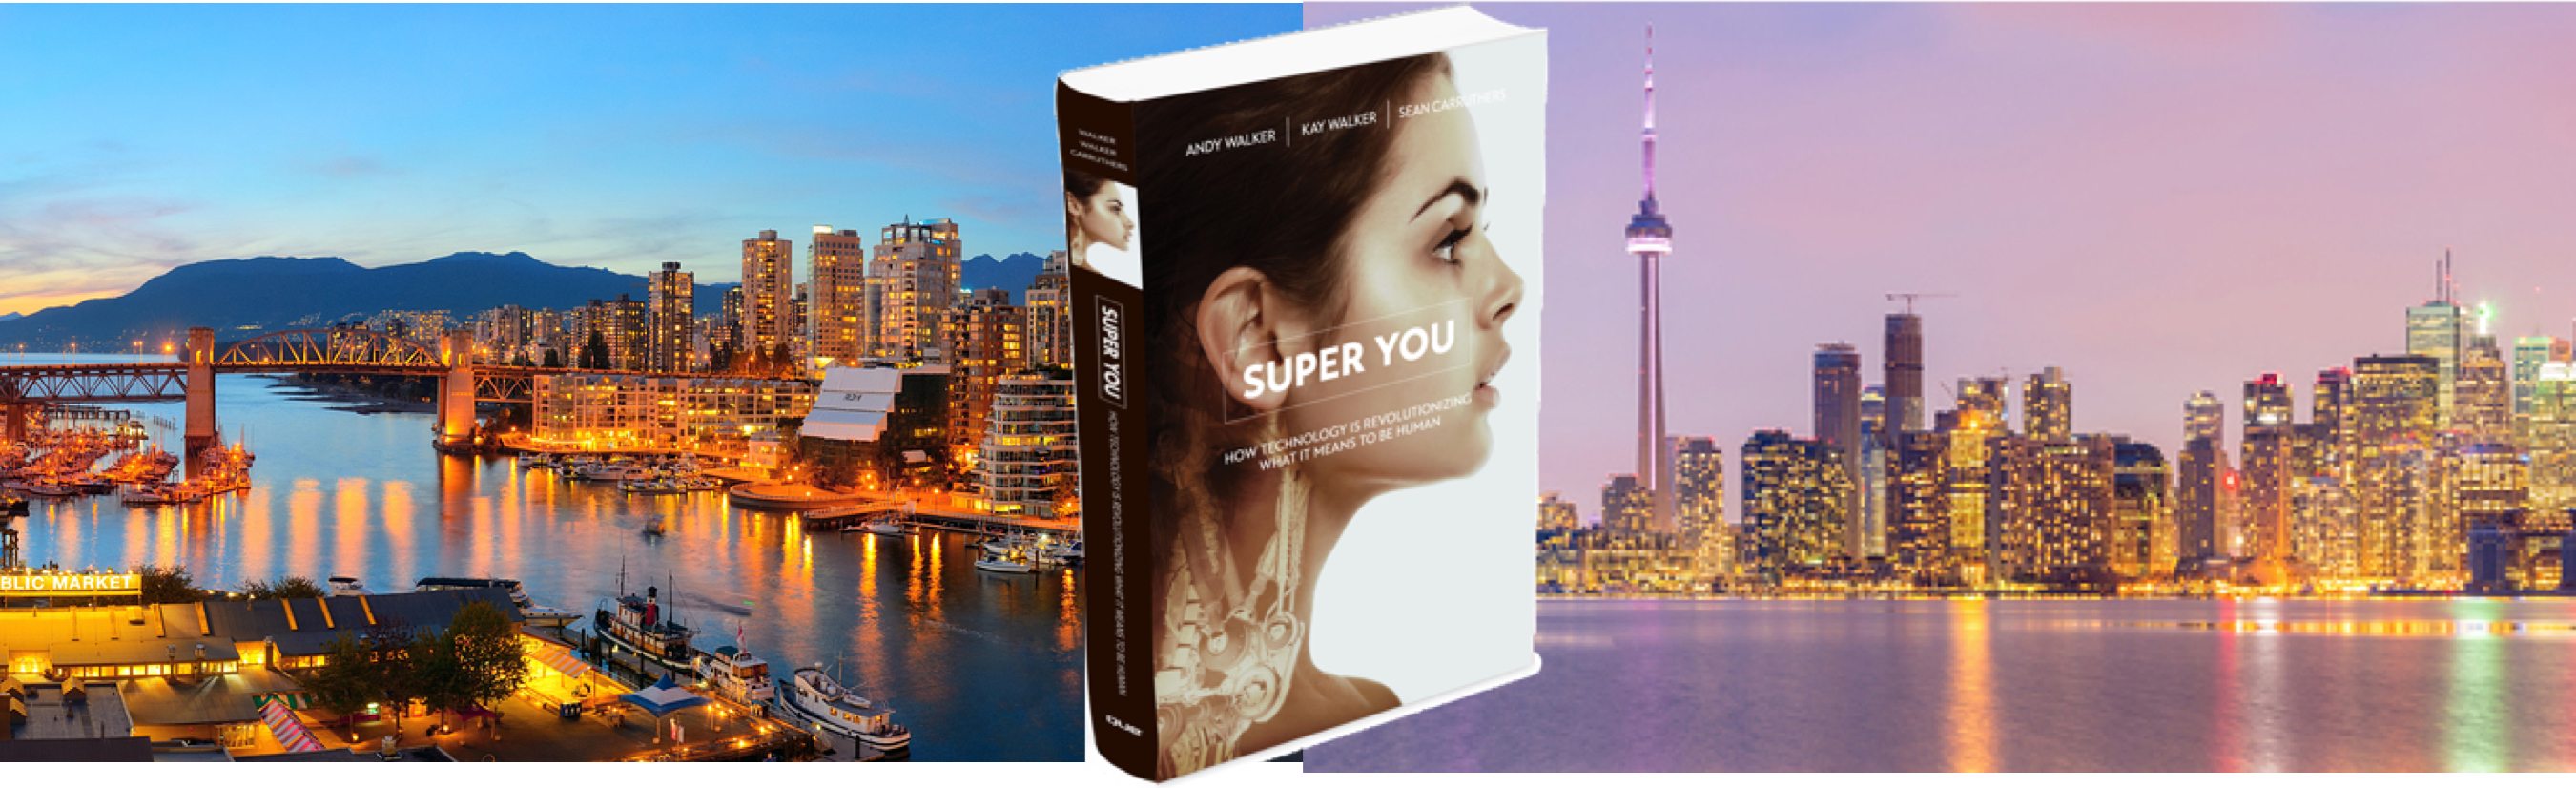 where t buy the transhmanist book super you in Canada